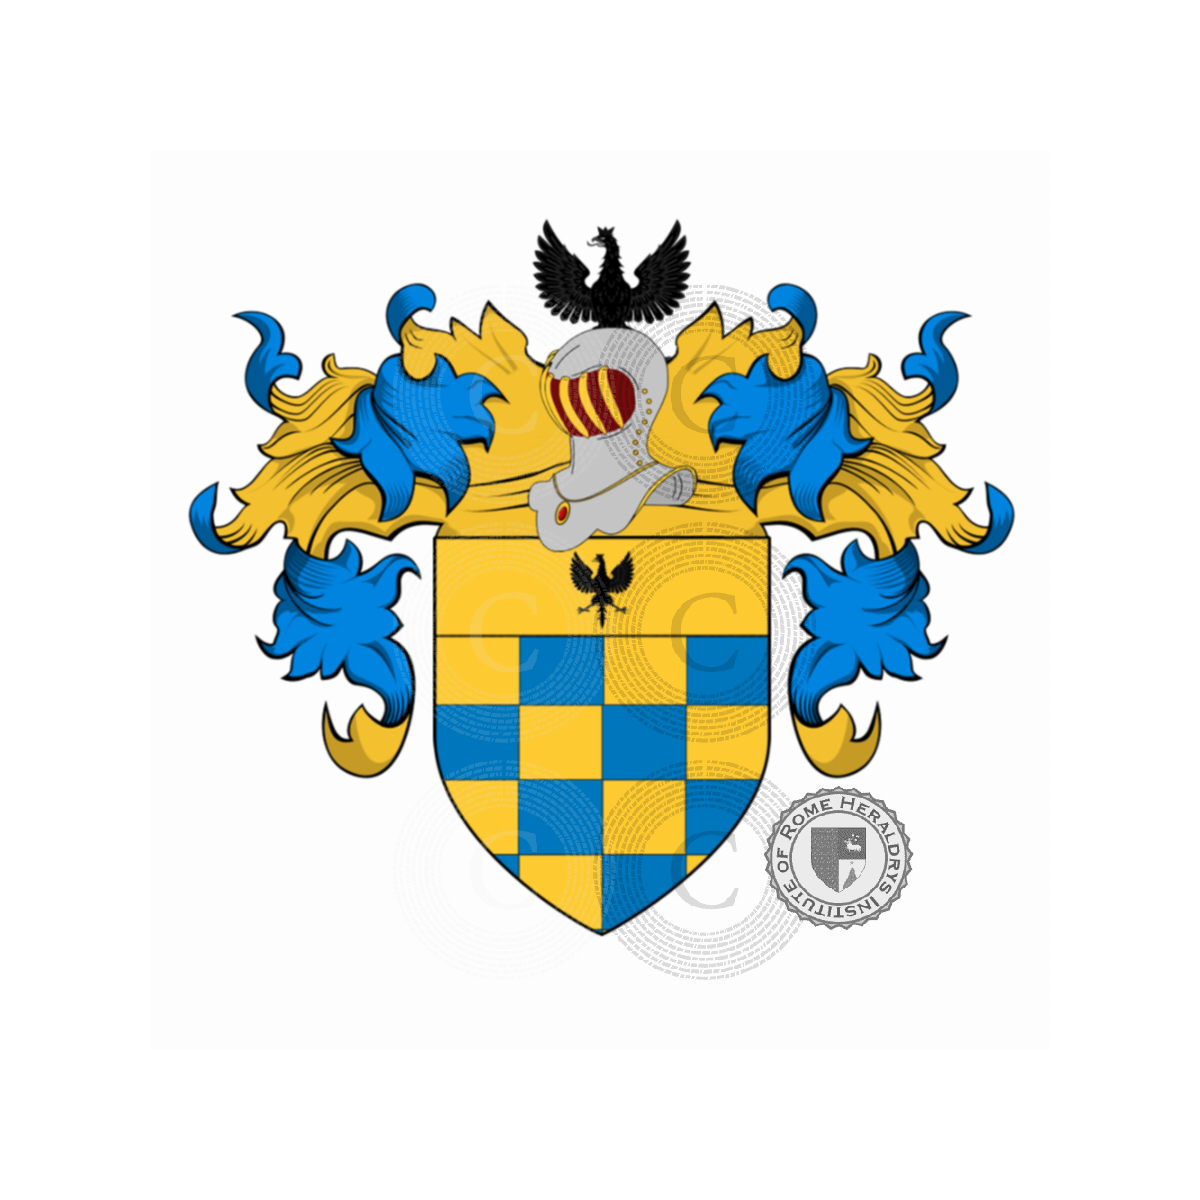 Escudo de la familiaGiorgi, de Giorgi,Georgiani,Georgio,Georgius,Giorgi da Romena,Giorgi de Pons,Giorgi del Lion d'Oro,Giorgiani,Giorgianni,Zorzi